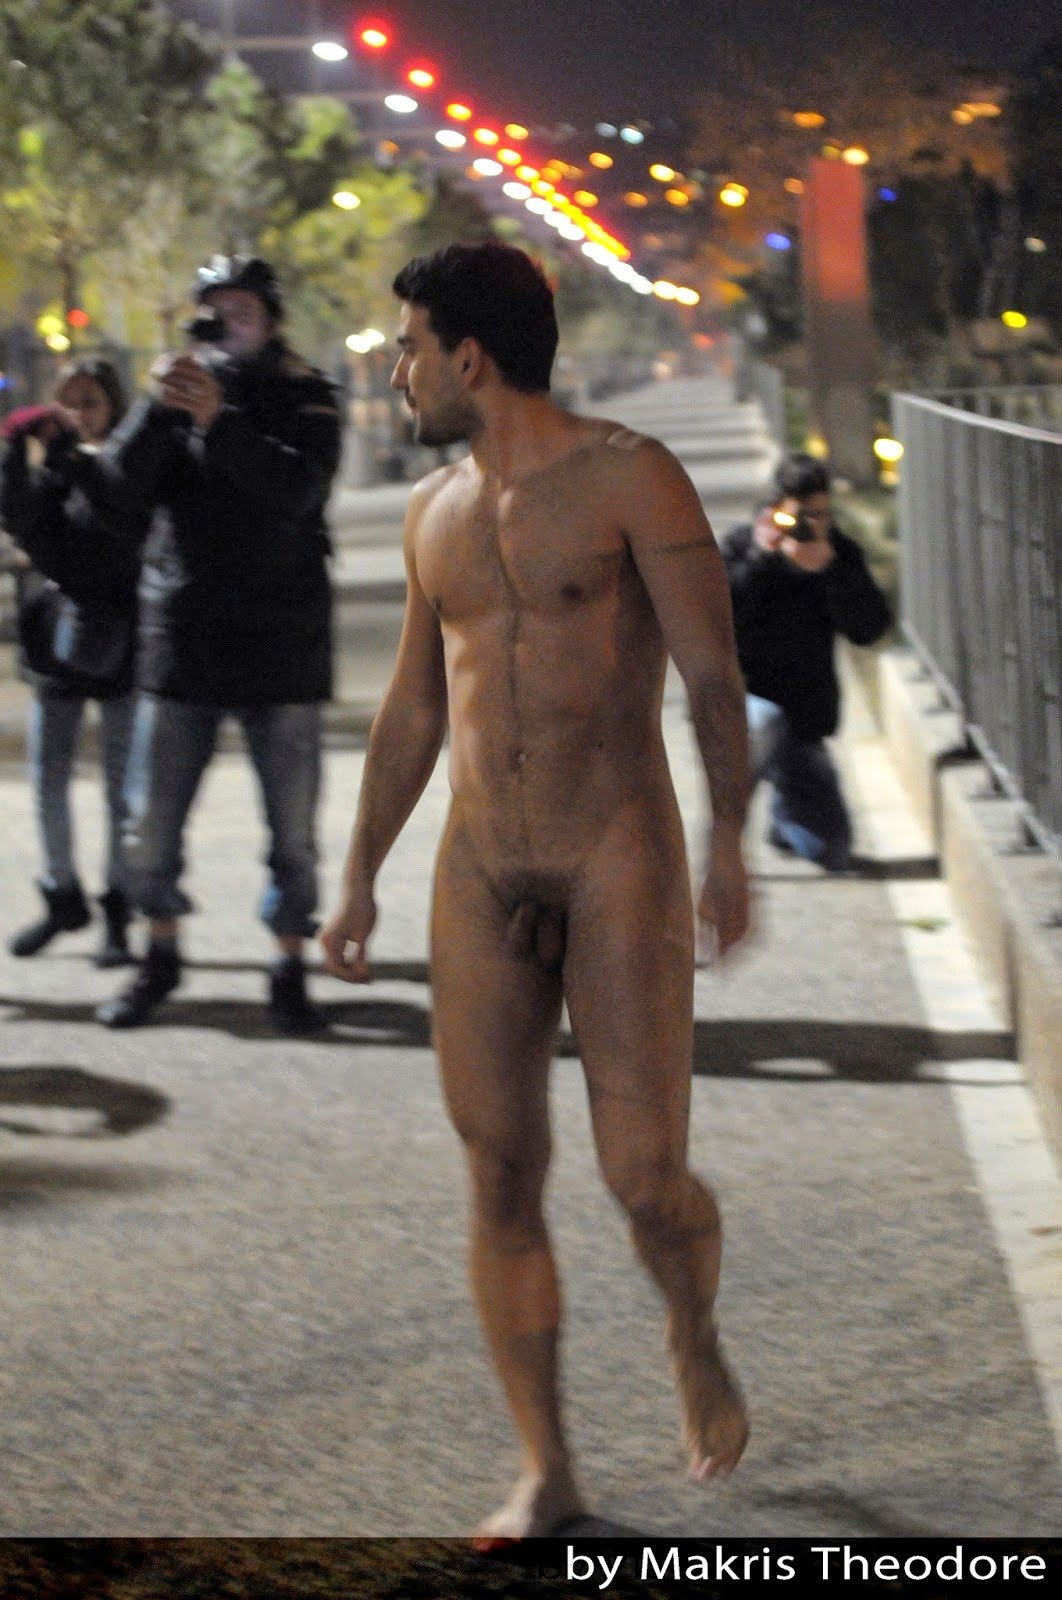 Guy Naked In Public in oc